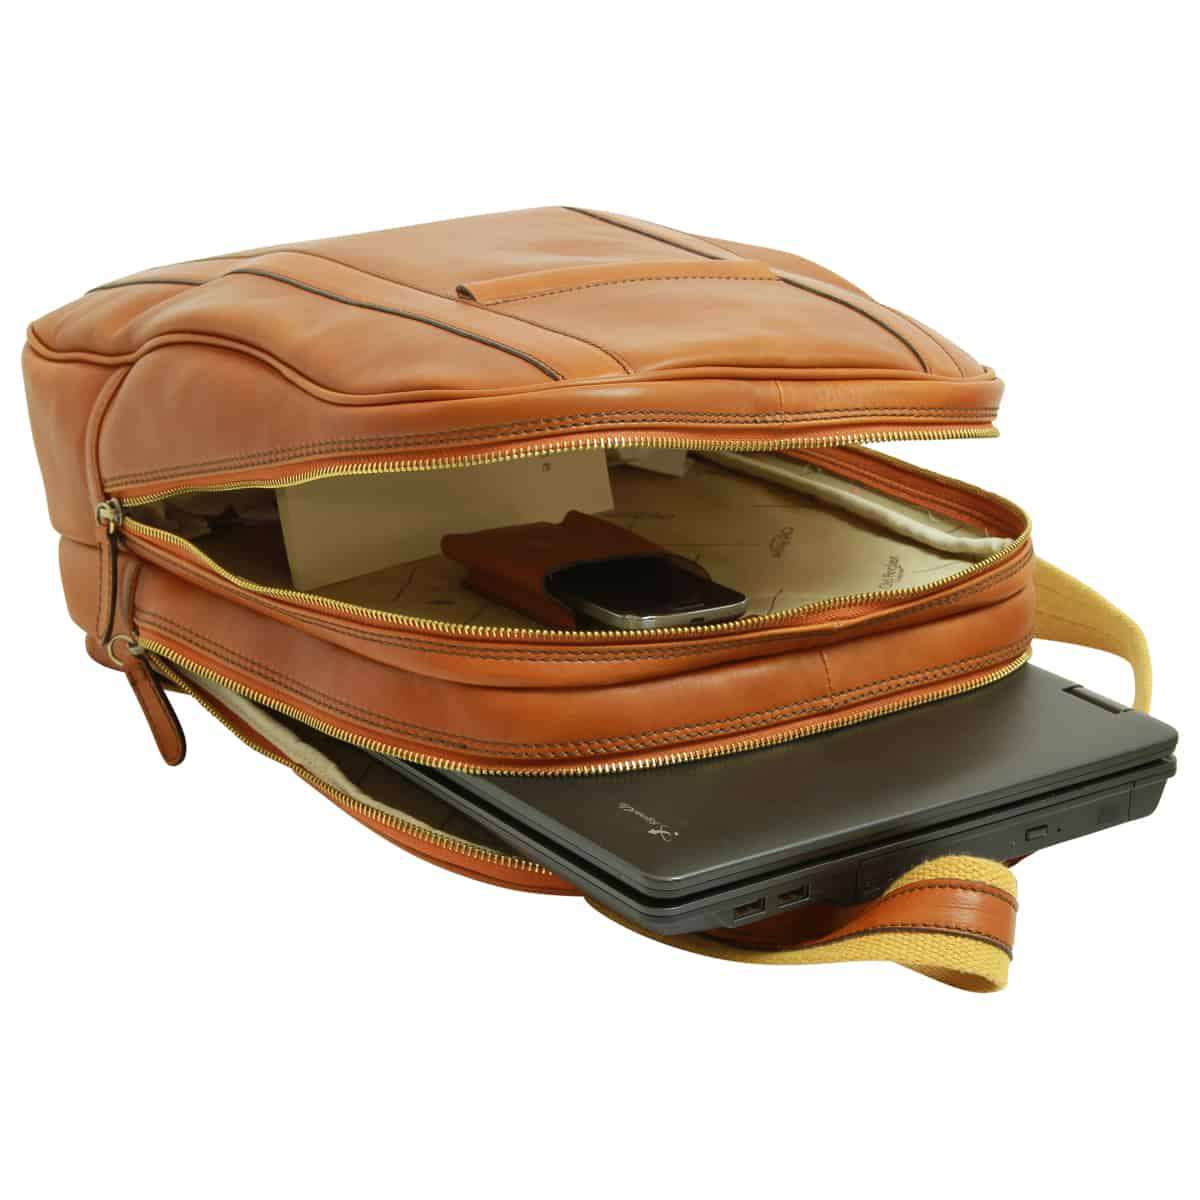 Soft Calfskin Leather Laptop Backpack - Gold | 031491CO UK | Old Angler Firenze